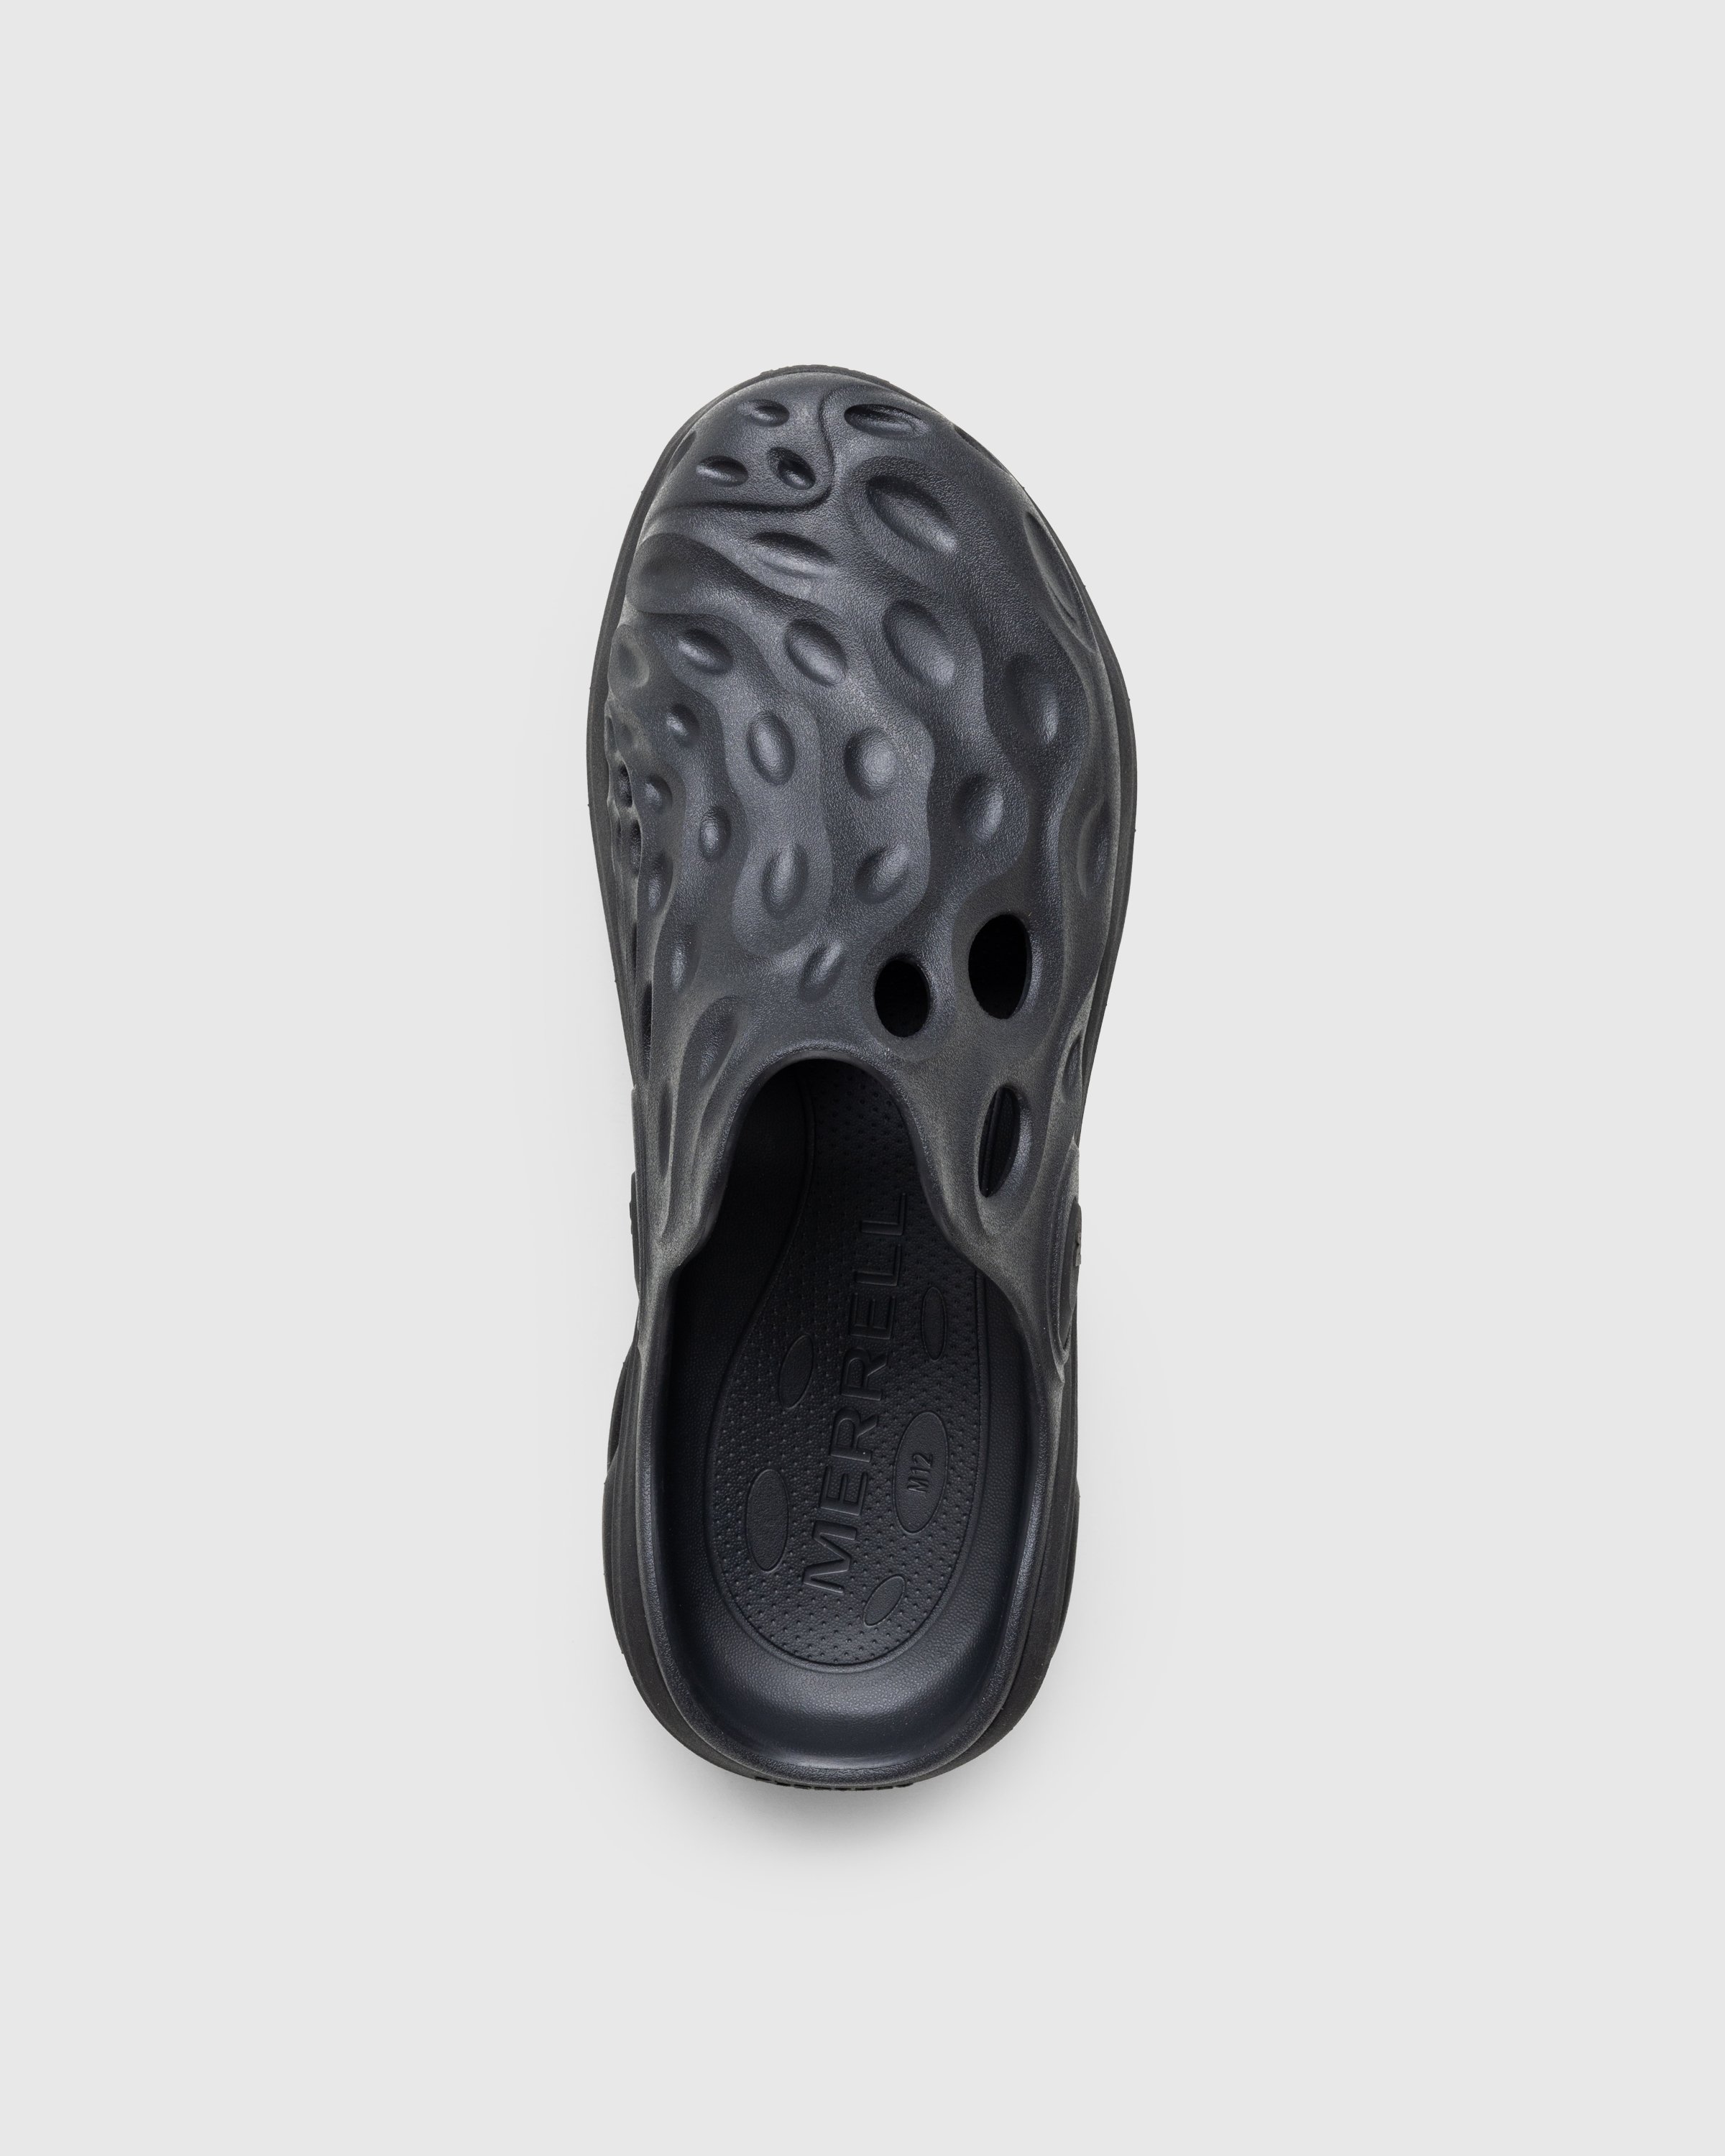 Merrell - HYDRO NEXT GEN MULE SE/TRIPLE BLACK - Footwear - Black - Image 5